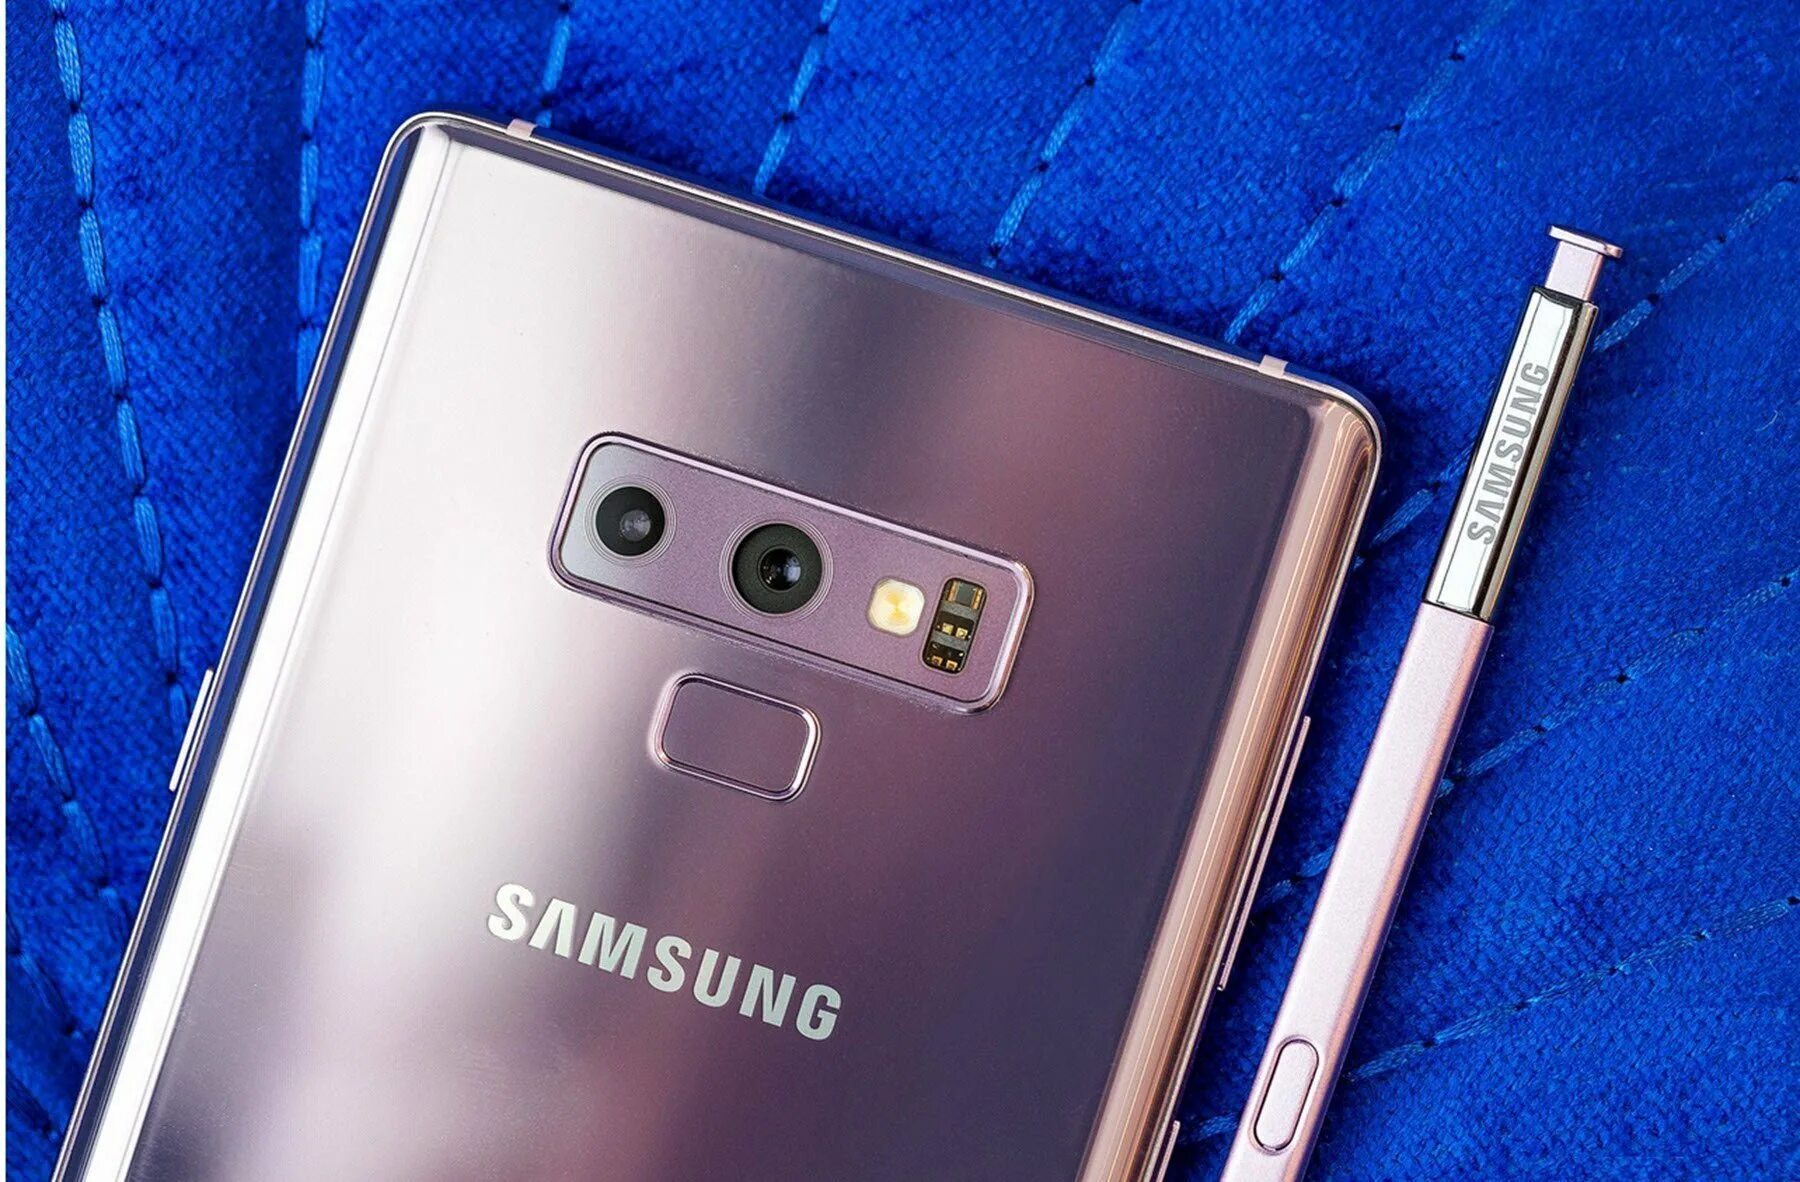 Samsung Galaxy s9 Note. Samsung Galaxy Note 9. Samsung Galaxy Note 9 Plus. Samsung Galaxy Note 2018.